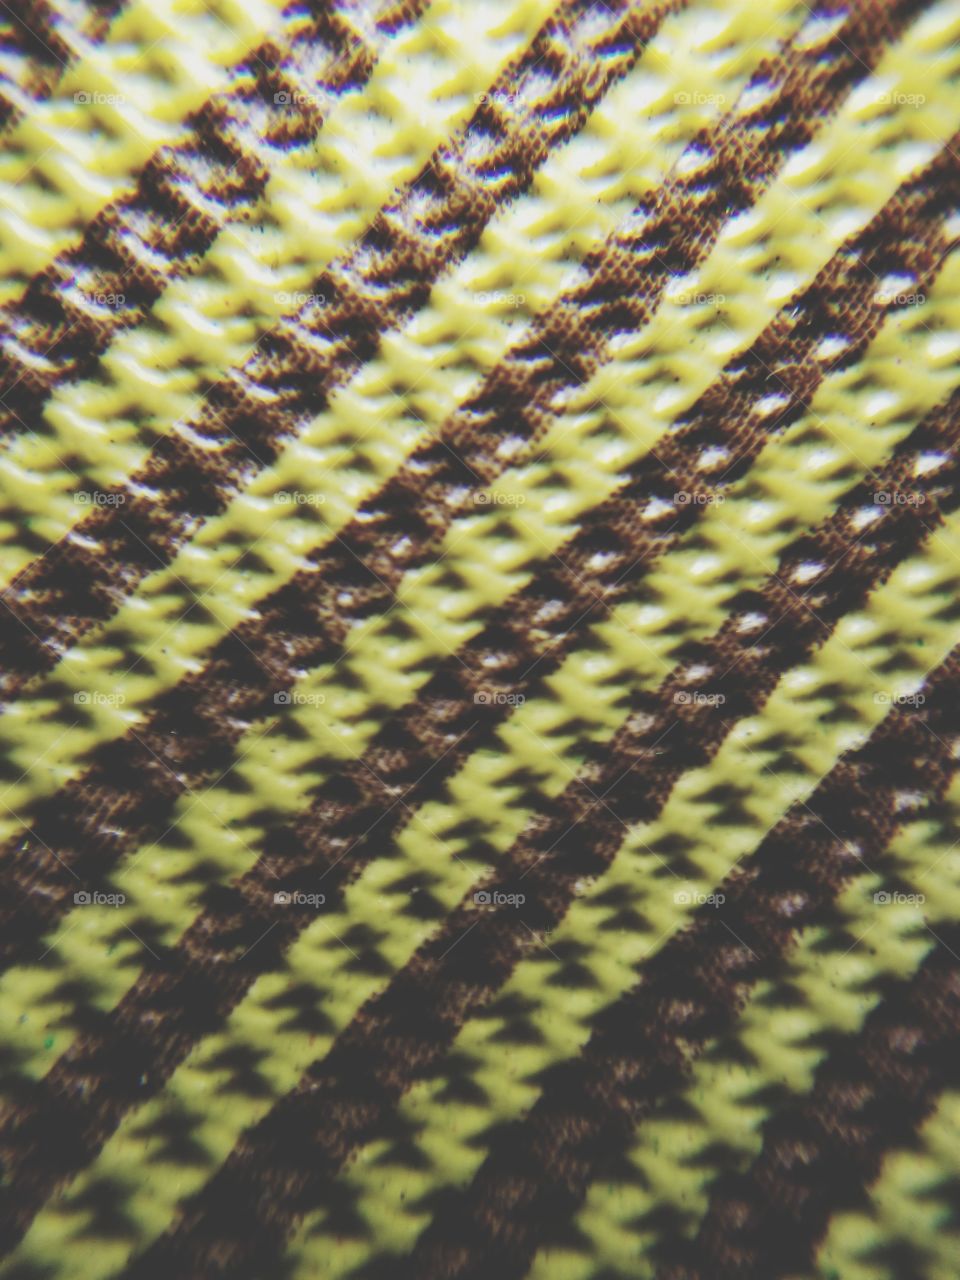 Marco tweed pattern